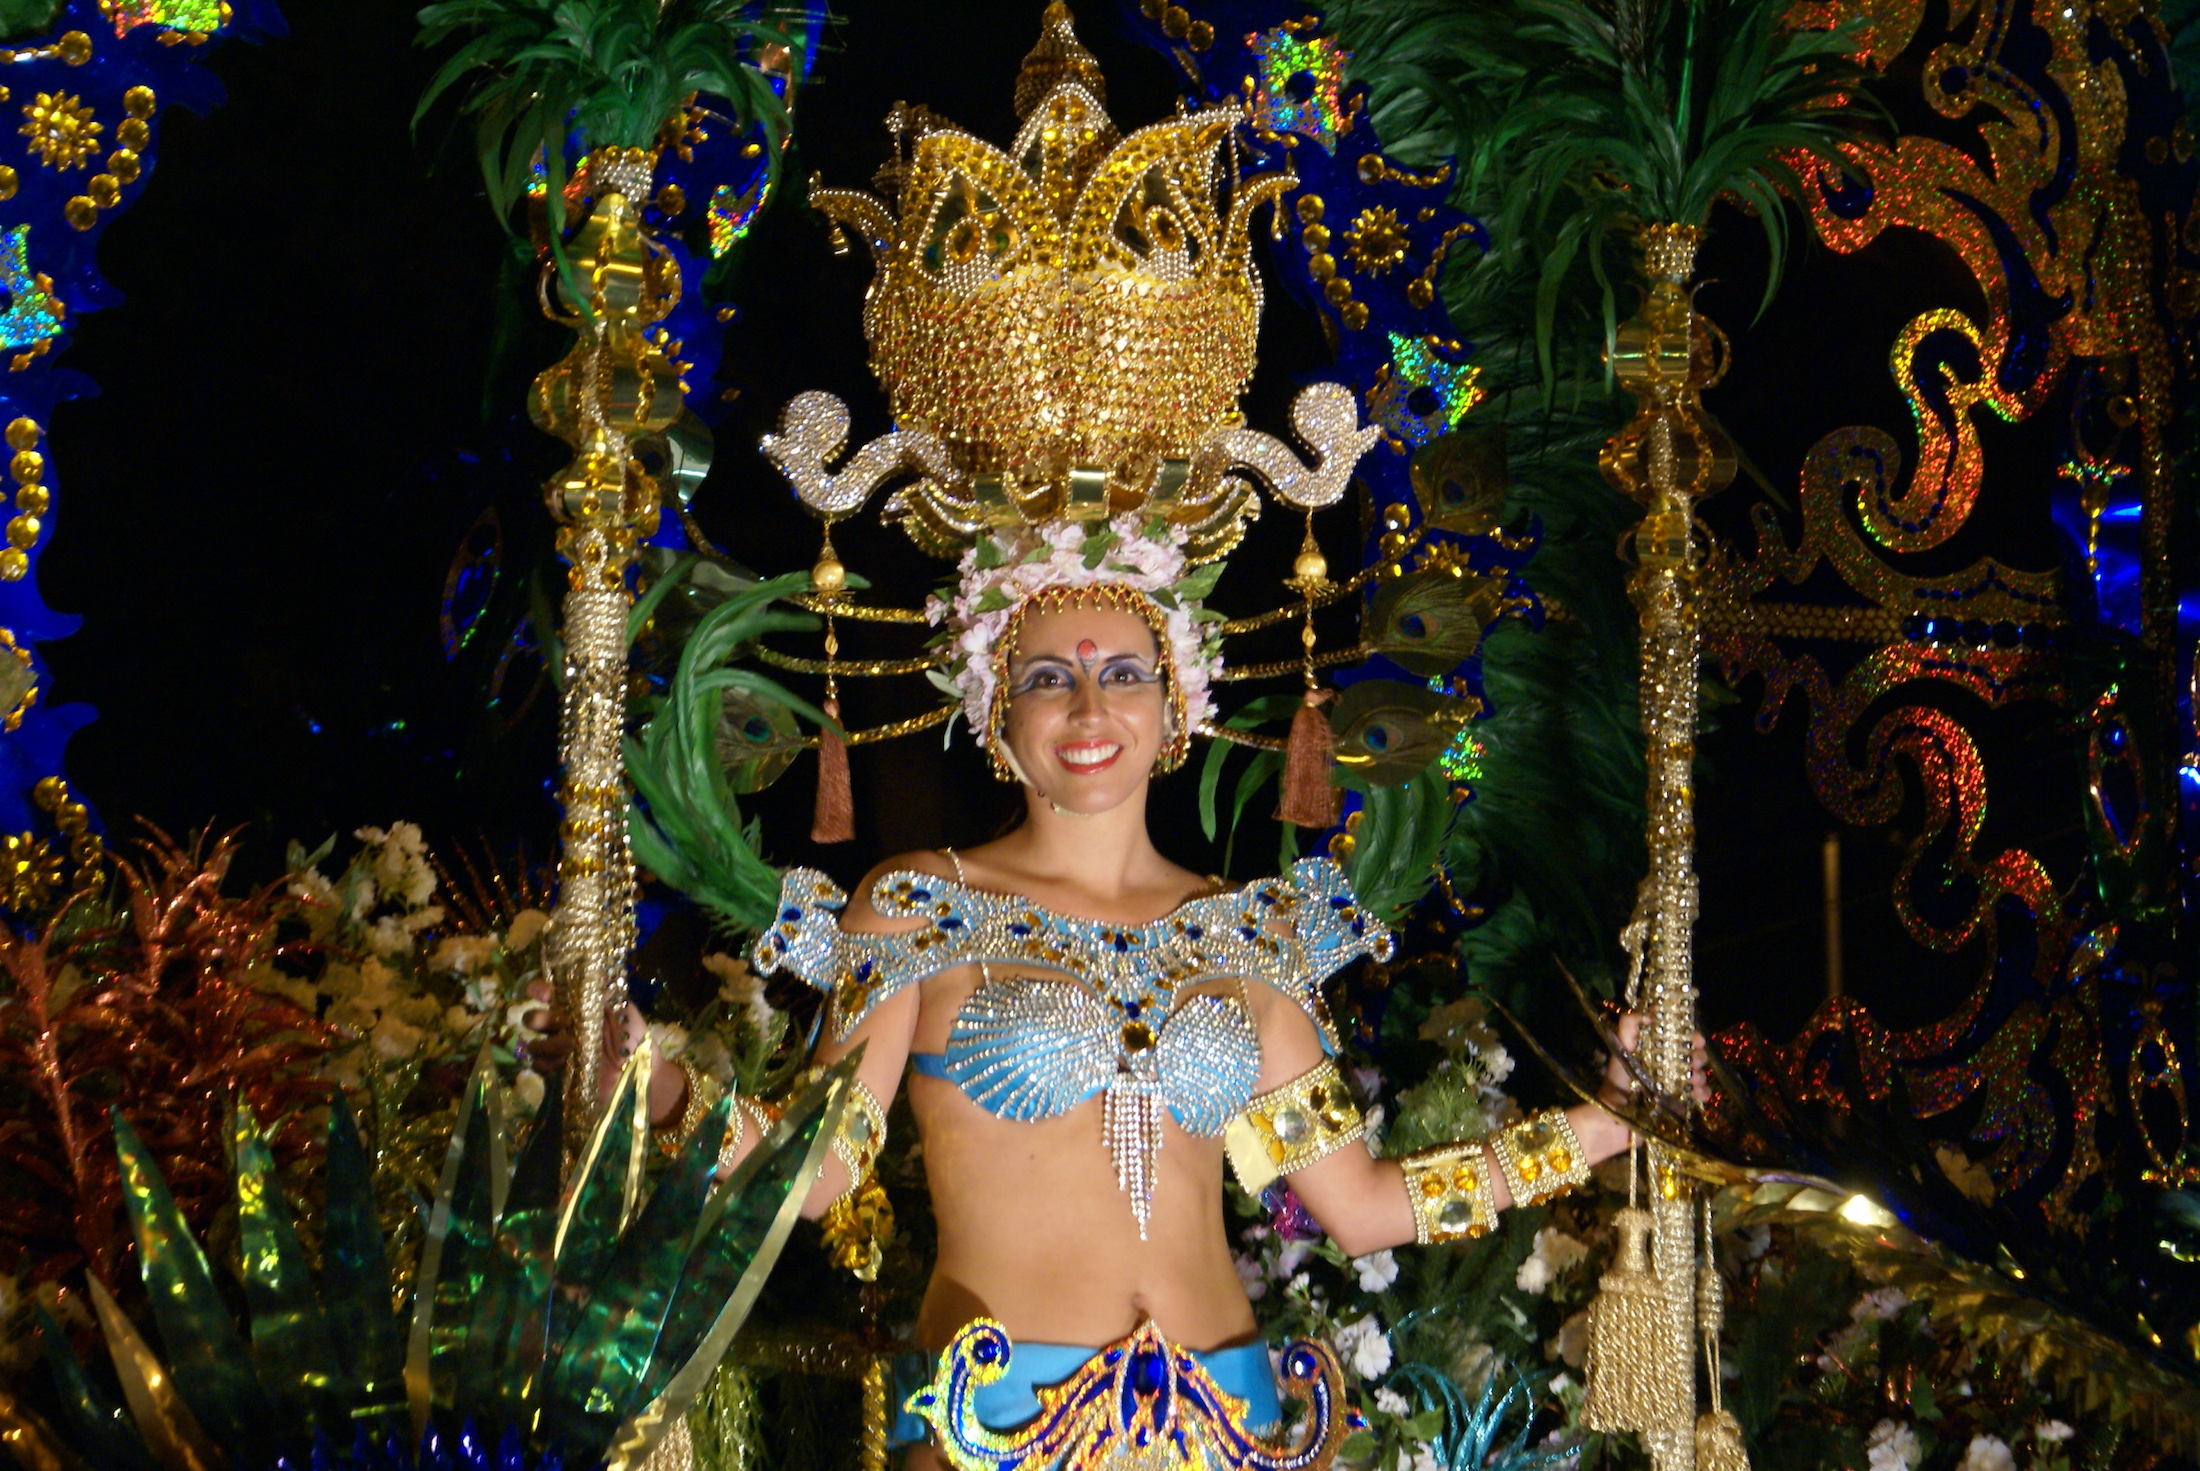 Celebrate Carnival in Lanzarote